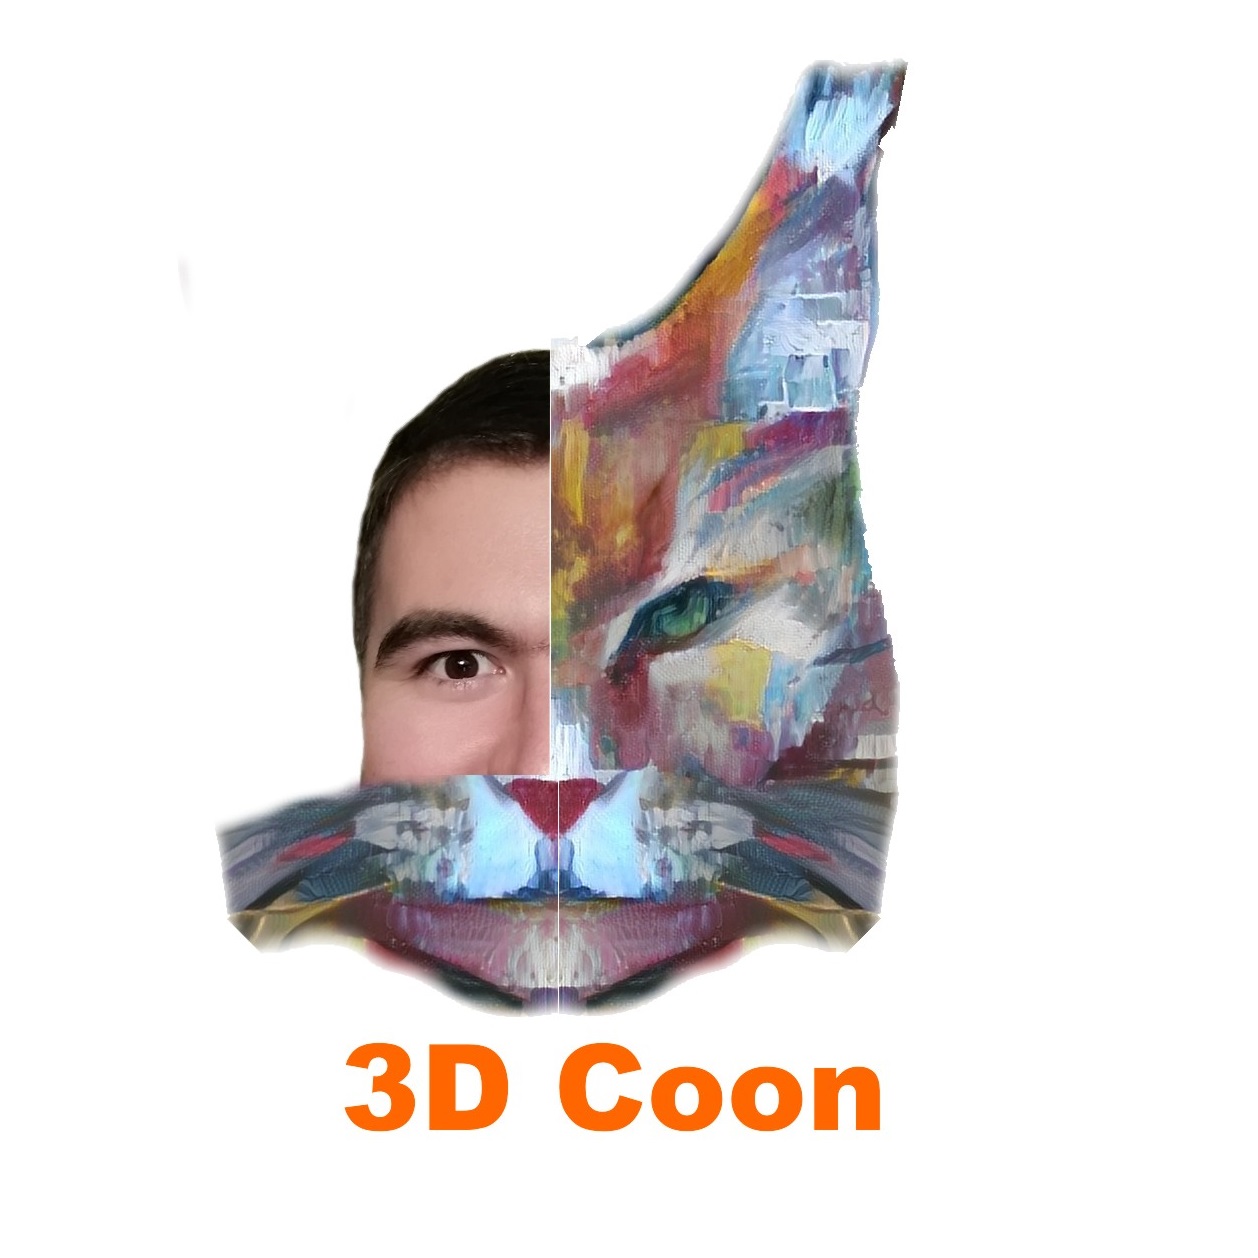 3D Coon